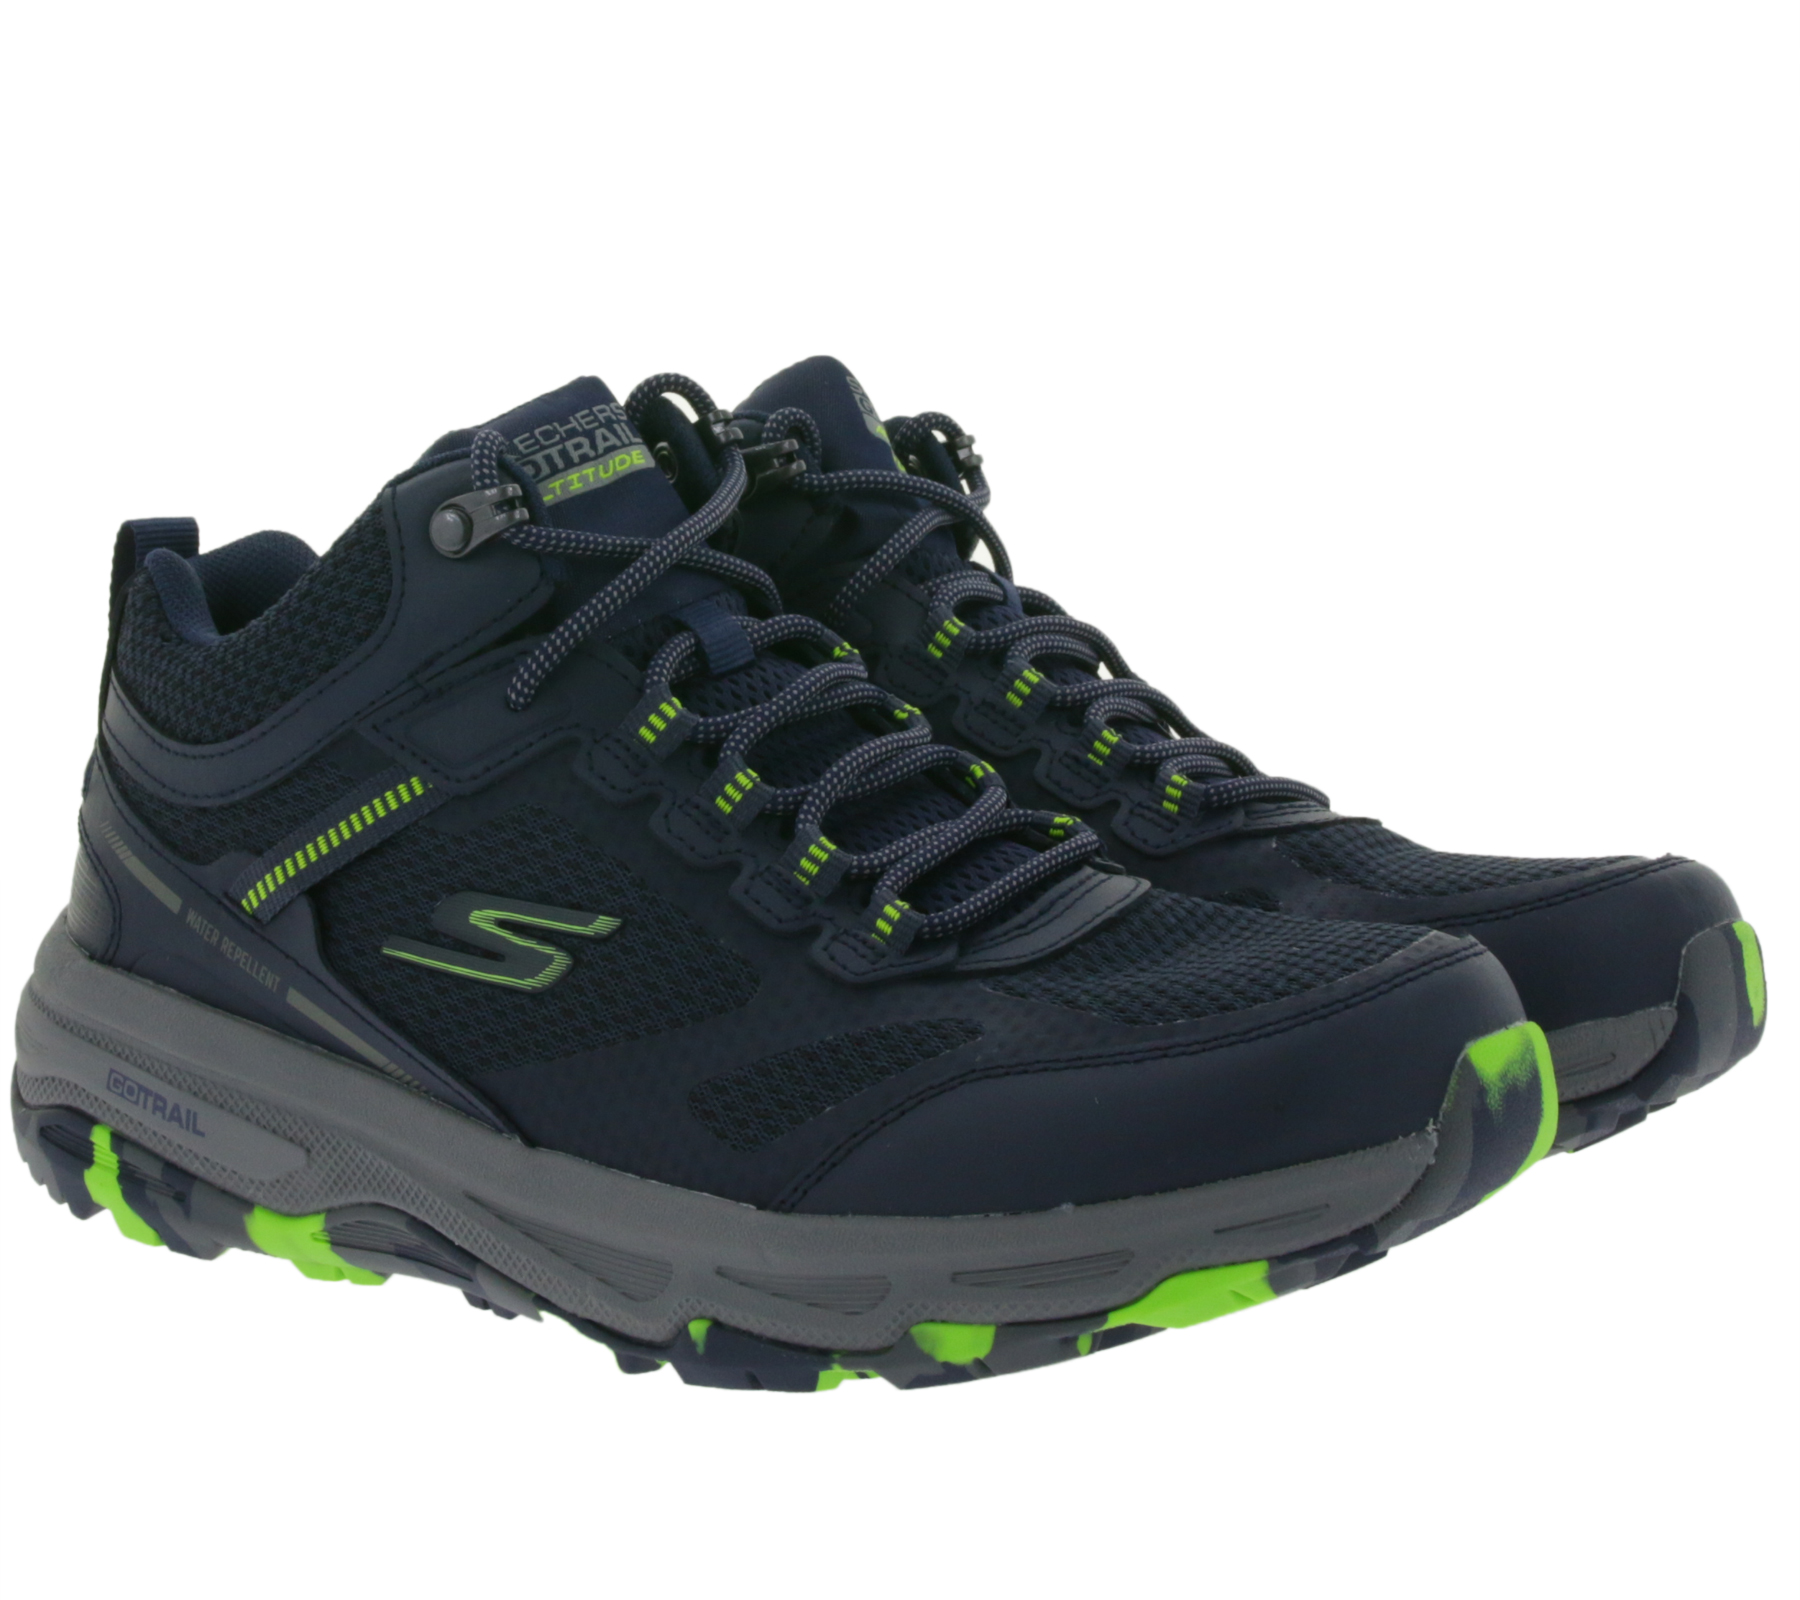 SKECHERS Go Run Trail Altitude Anorak Herren Trailrunning-Schuhe wasserabweisende Hiking-Schuhe mit Ortholite-Einlegesohle 220597/NVY Navy von Skechers